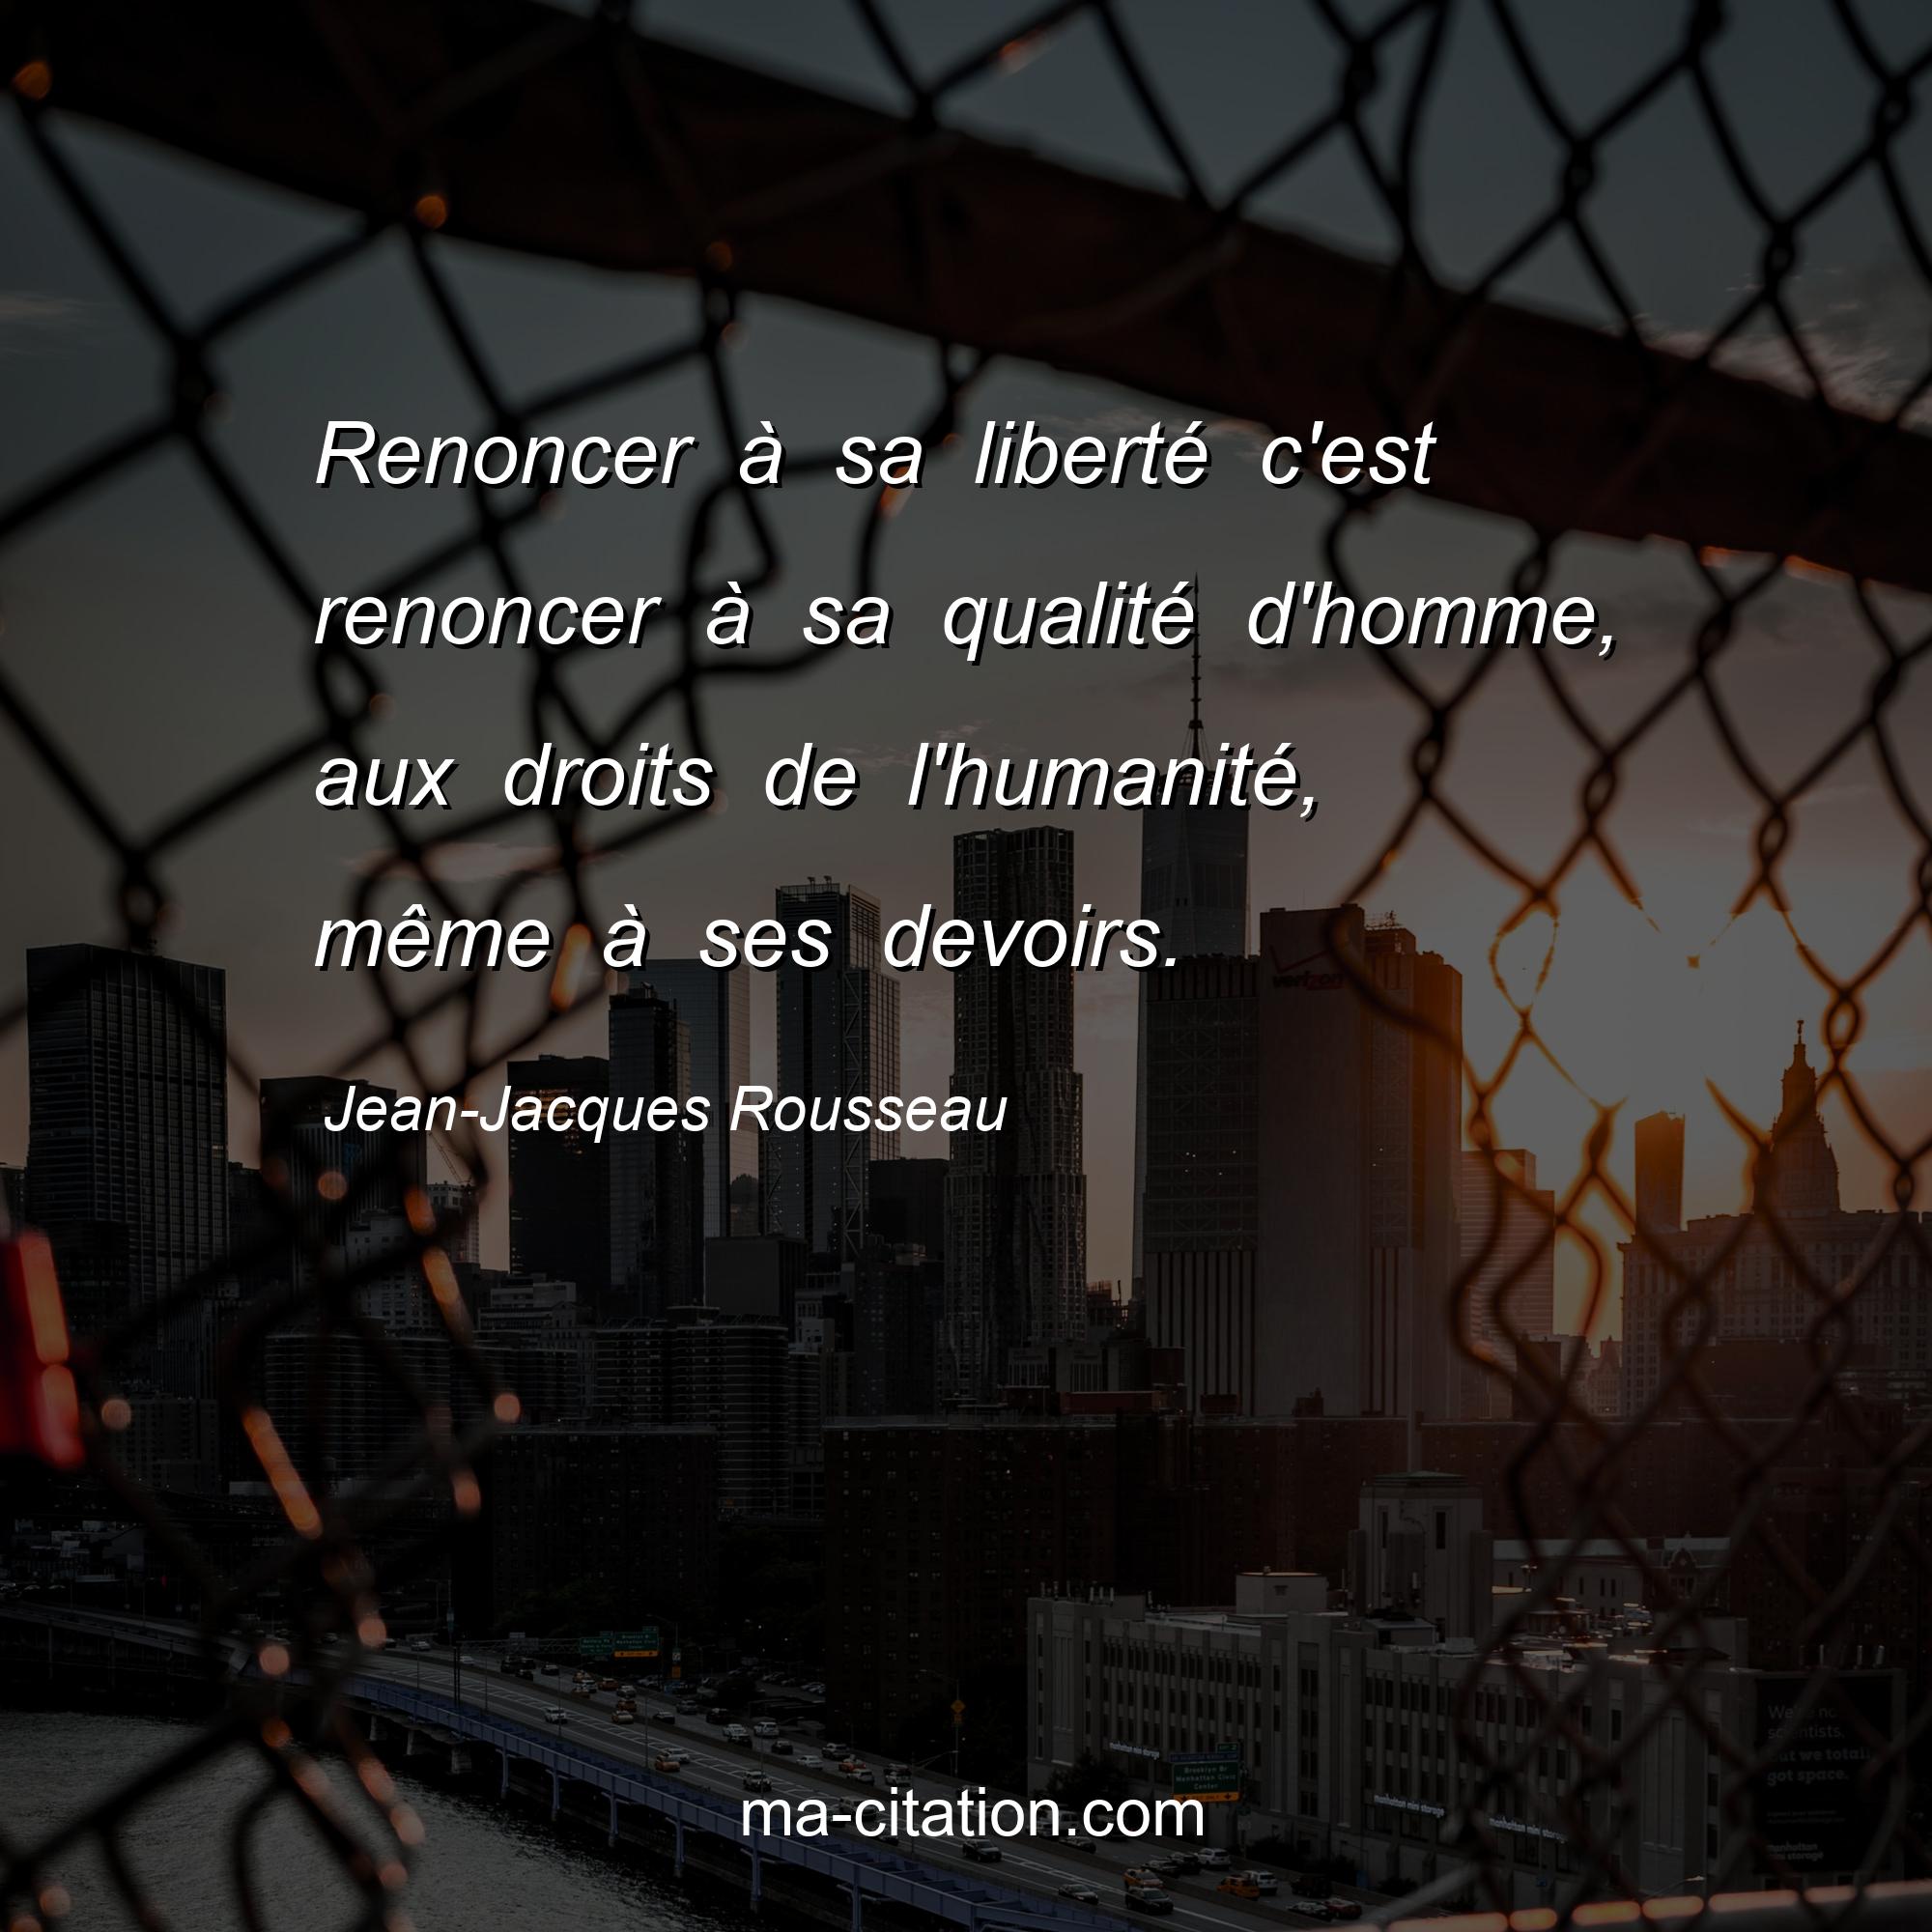 Jean-Jacques Rousseau : Renoncer à sa liberté c'est renoncer à sa qualité d'homme, aux droits de l'humanité, même à ses devoirs.